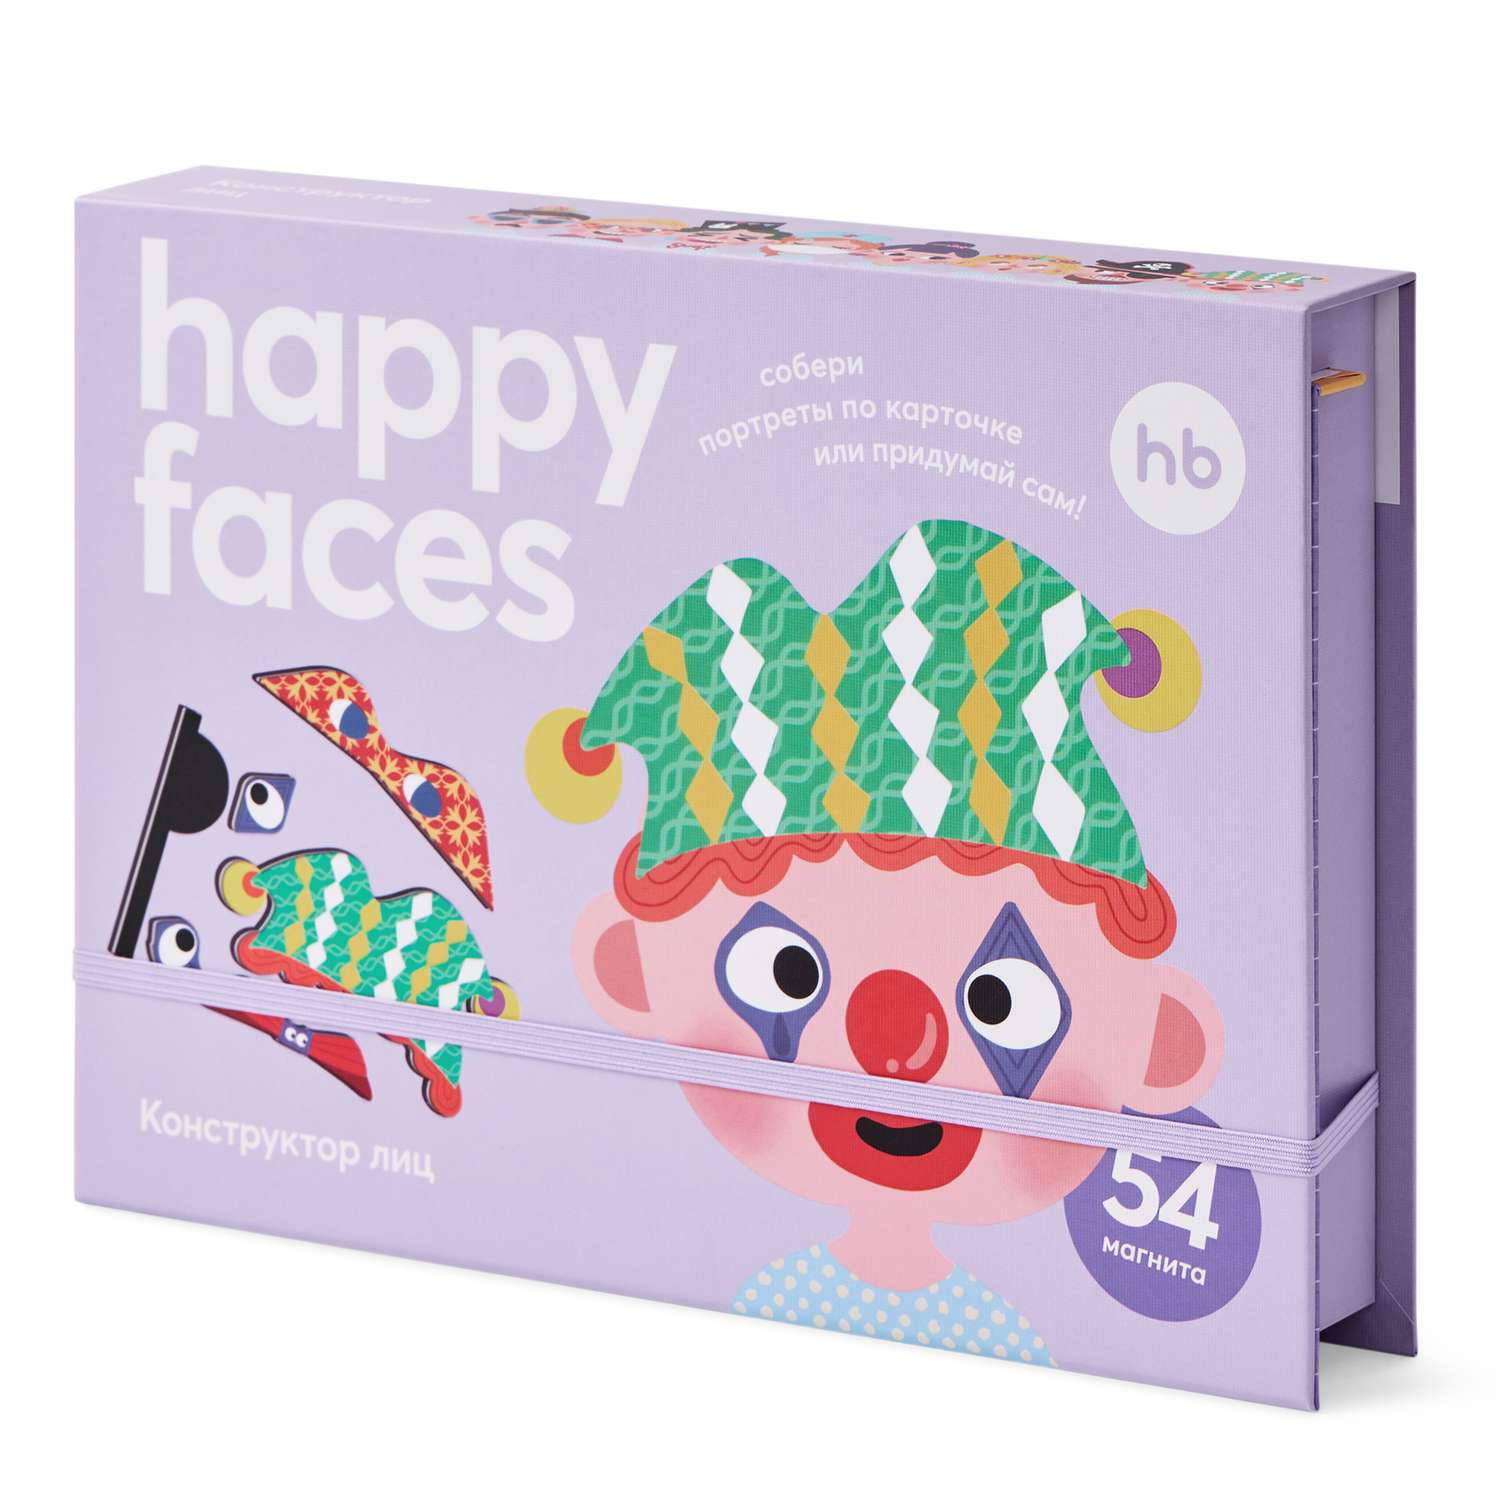 Магнитный пазл Happy Baby игрушка Happy Faces - фото 17